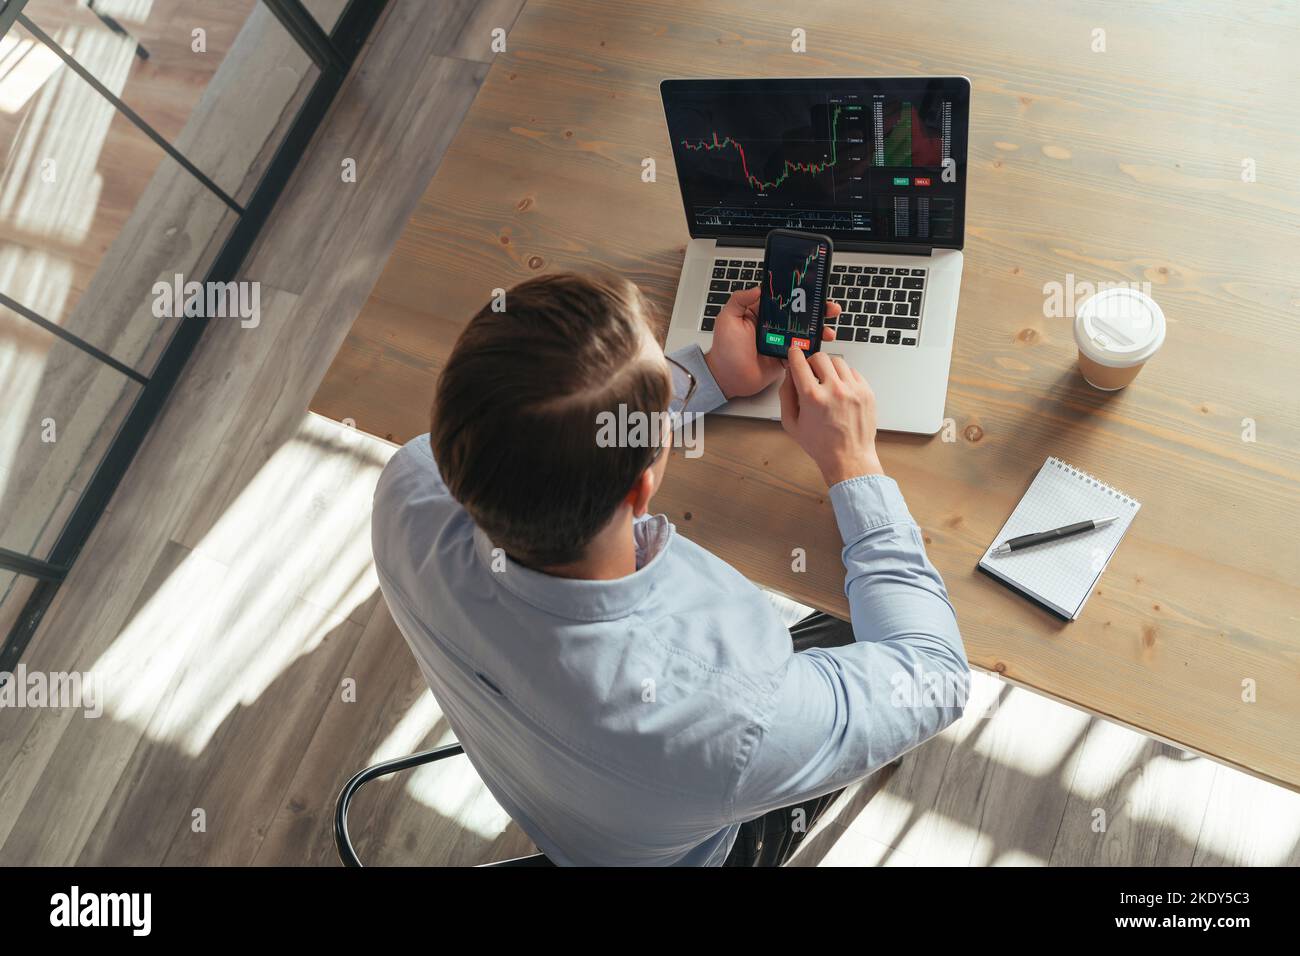 Vue de dessus d'un homme assis à une table de bureau devant un ordinateur portable avec des cartes du marché de la crypto-monnaie, tenant un téléphone avec une application d'investissement ouverte avec un diagramme de prix allant appuyer sur le bouton de vente. Copier l'espace Banque D'Images